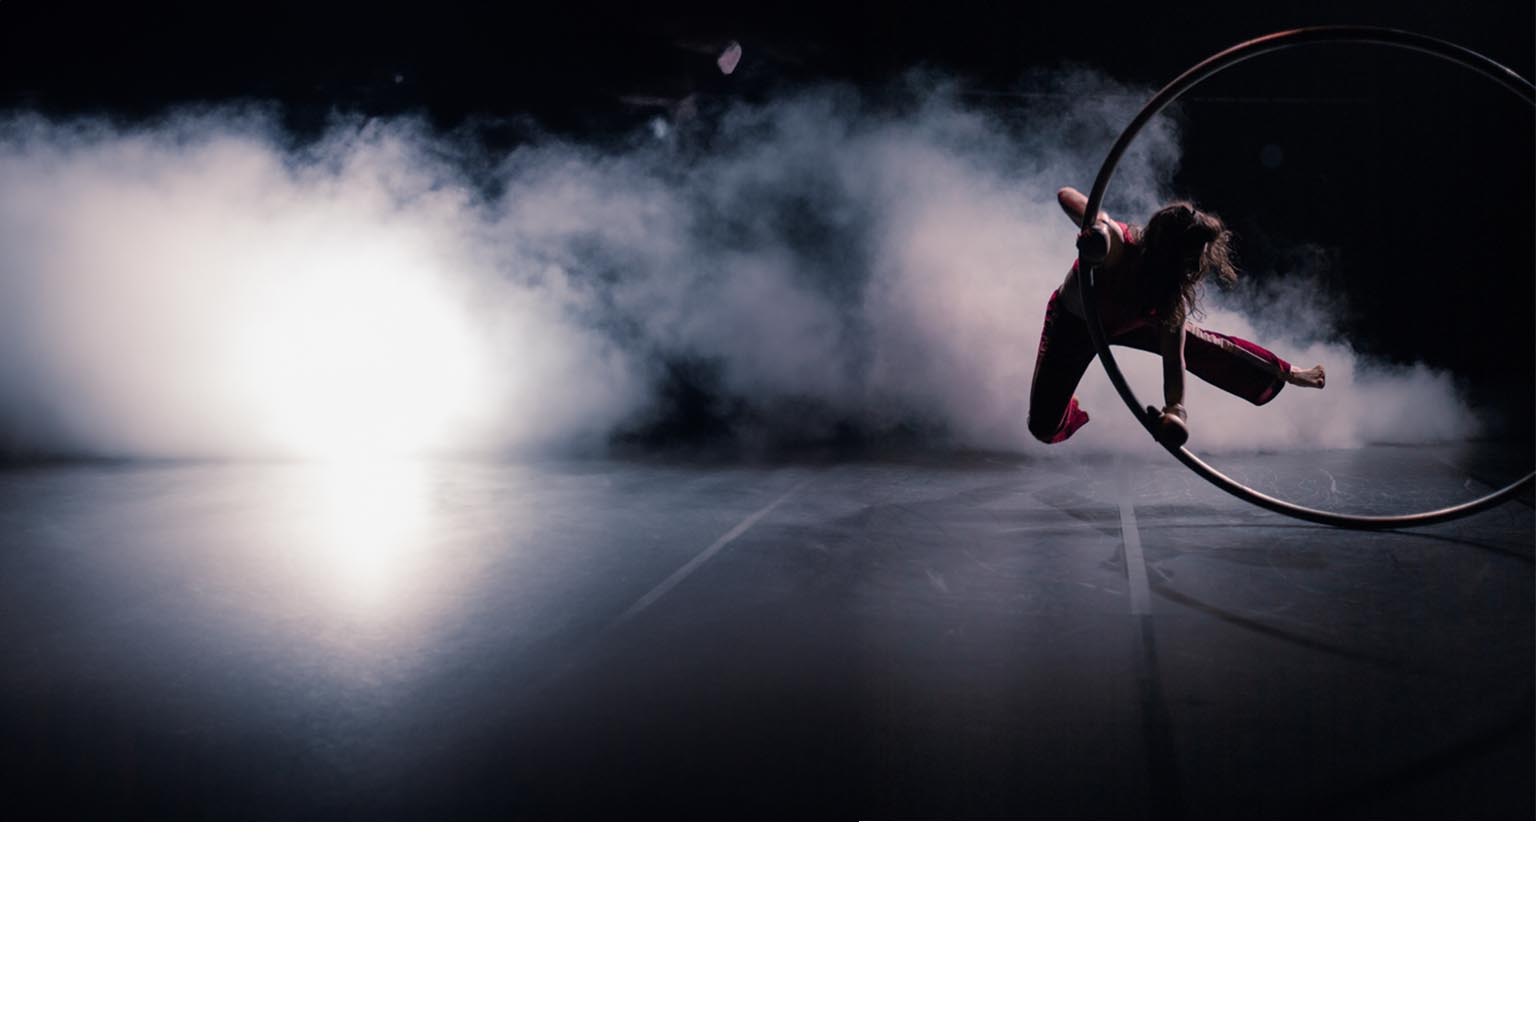 Lontano / Instante circus show dance show paris theatre du rond-point